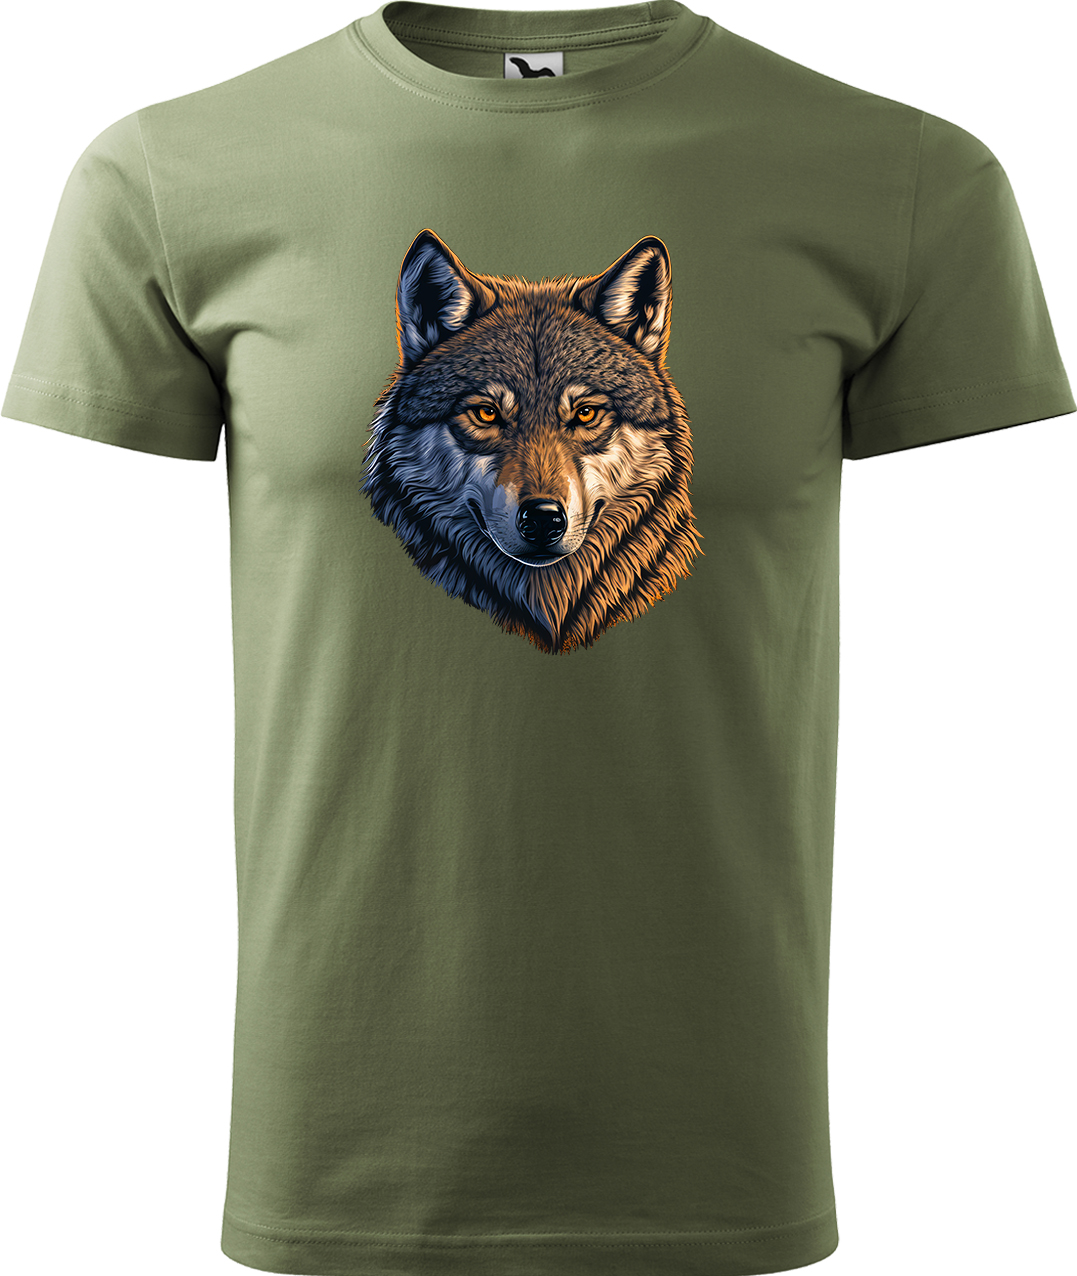 Pánské tričko s vlkem - Hlava vlka Velikost: 3XL, Barva: Světlá khaki (28), Střih: pánský